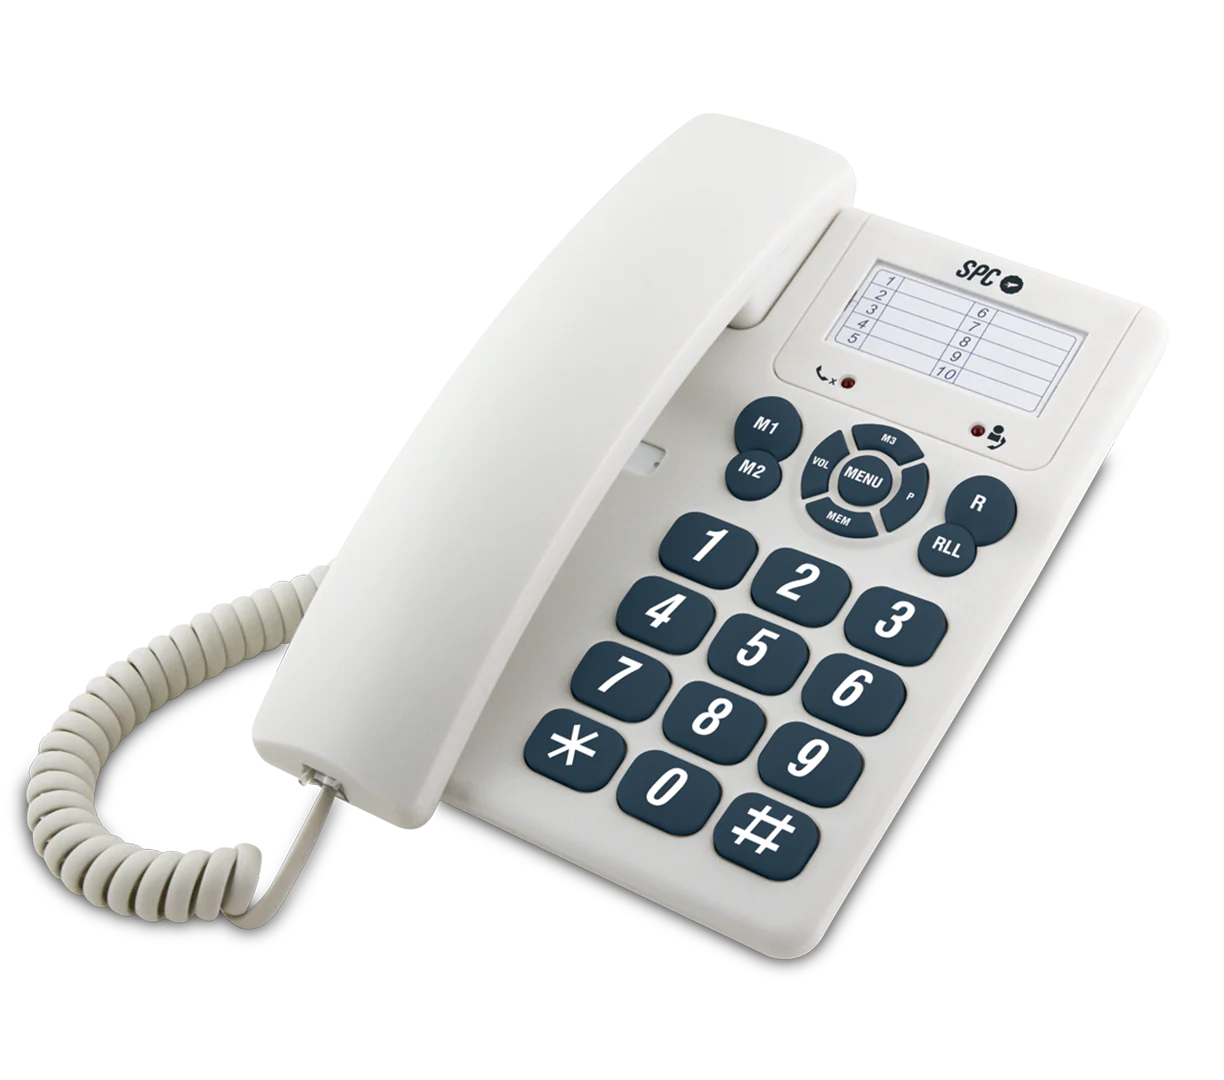 Spc Original Telefono Fijo Teclas Extragrandes - Diferentes Niveles De Timbre - 3 Memorias Directas - Para Mesa Y Pared - Color Blanco